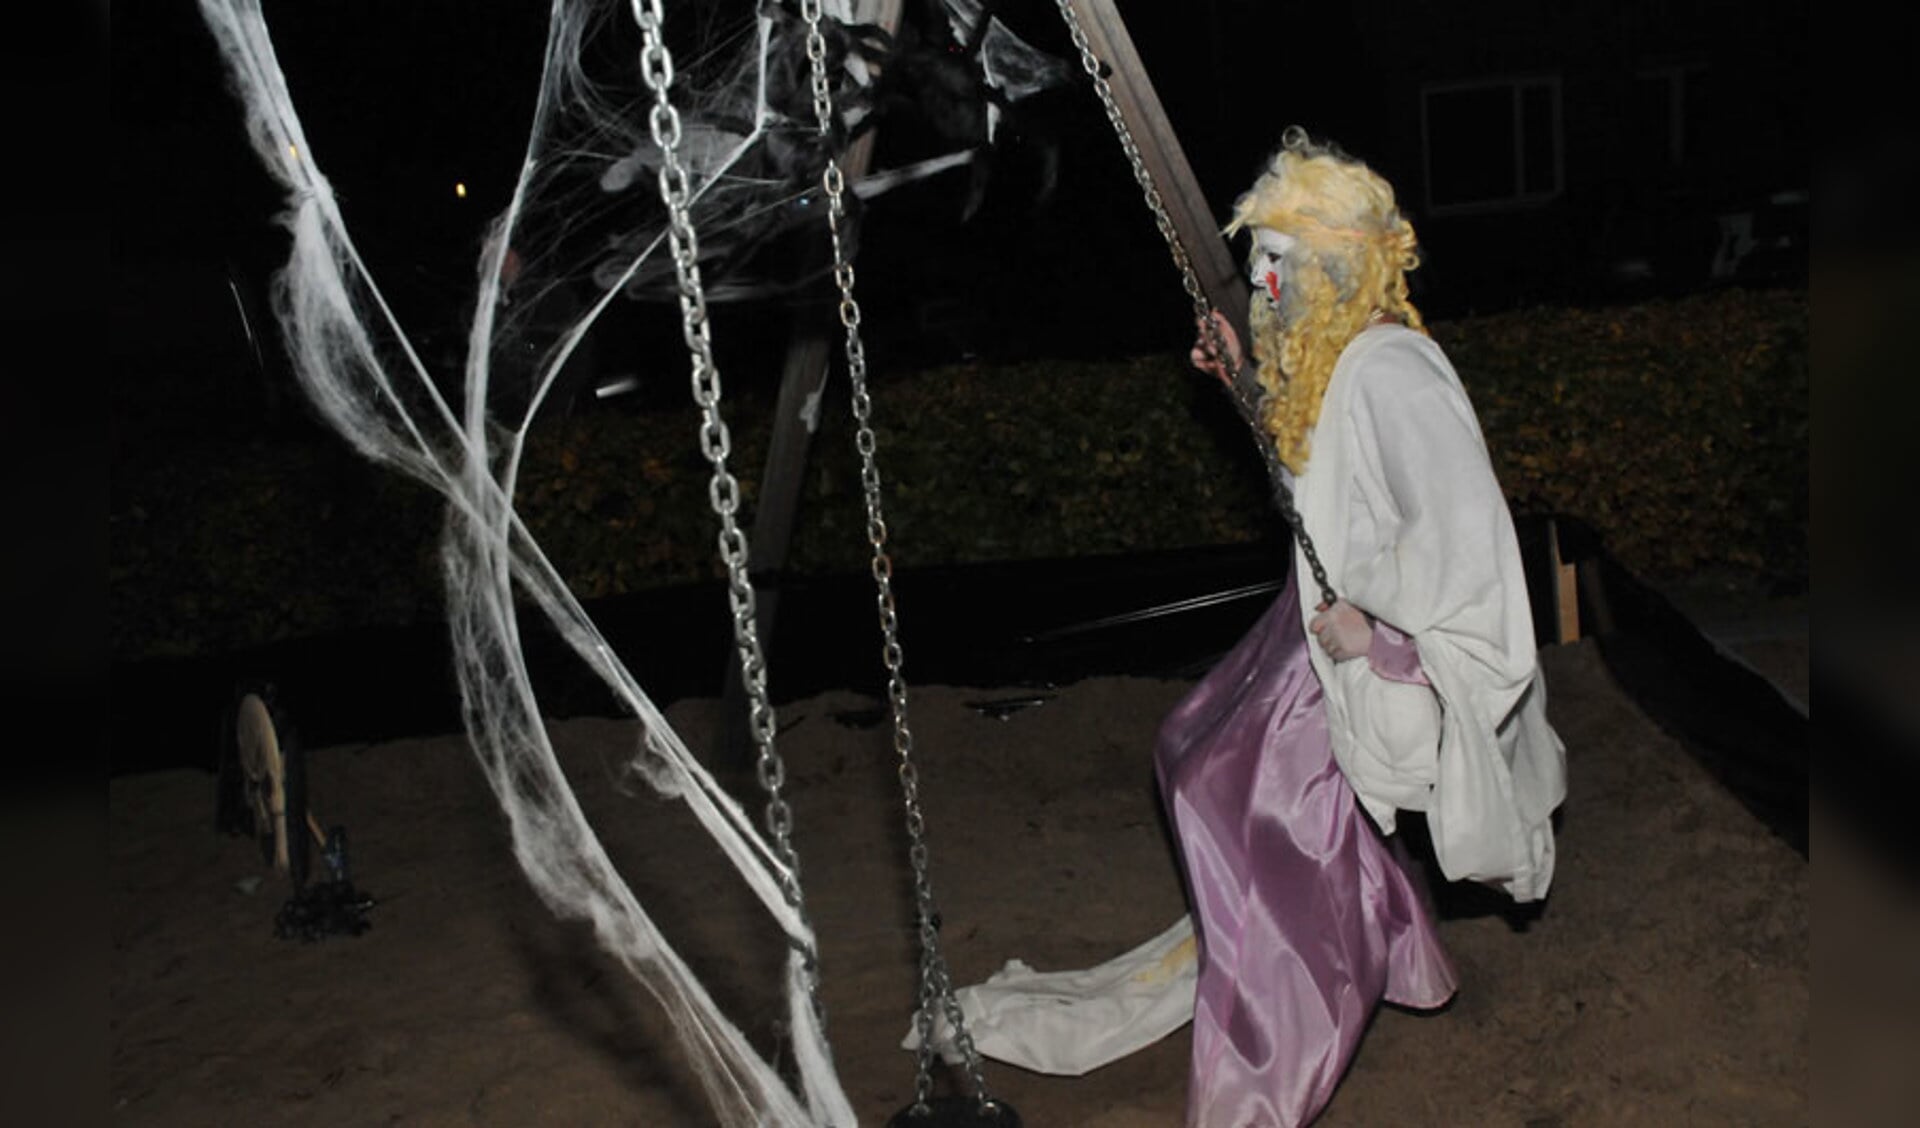 Veel enge figuren tijdens Halloween-avond in de Haagse Beemden. foto Perry Roovers